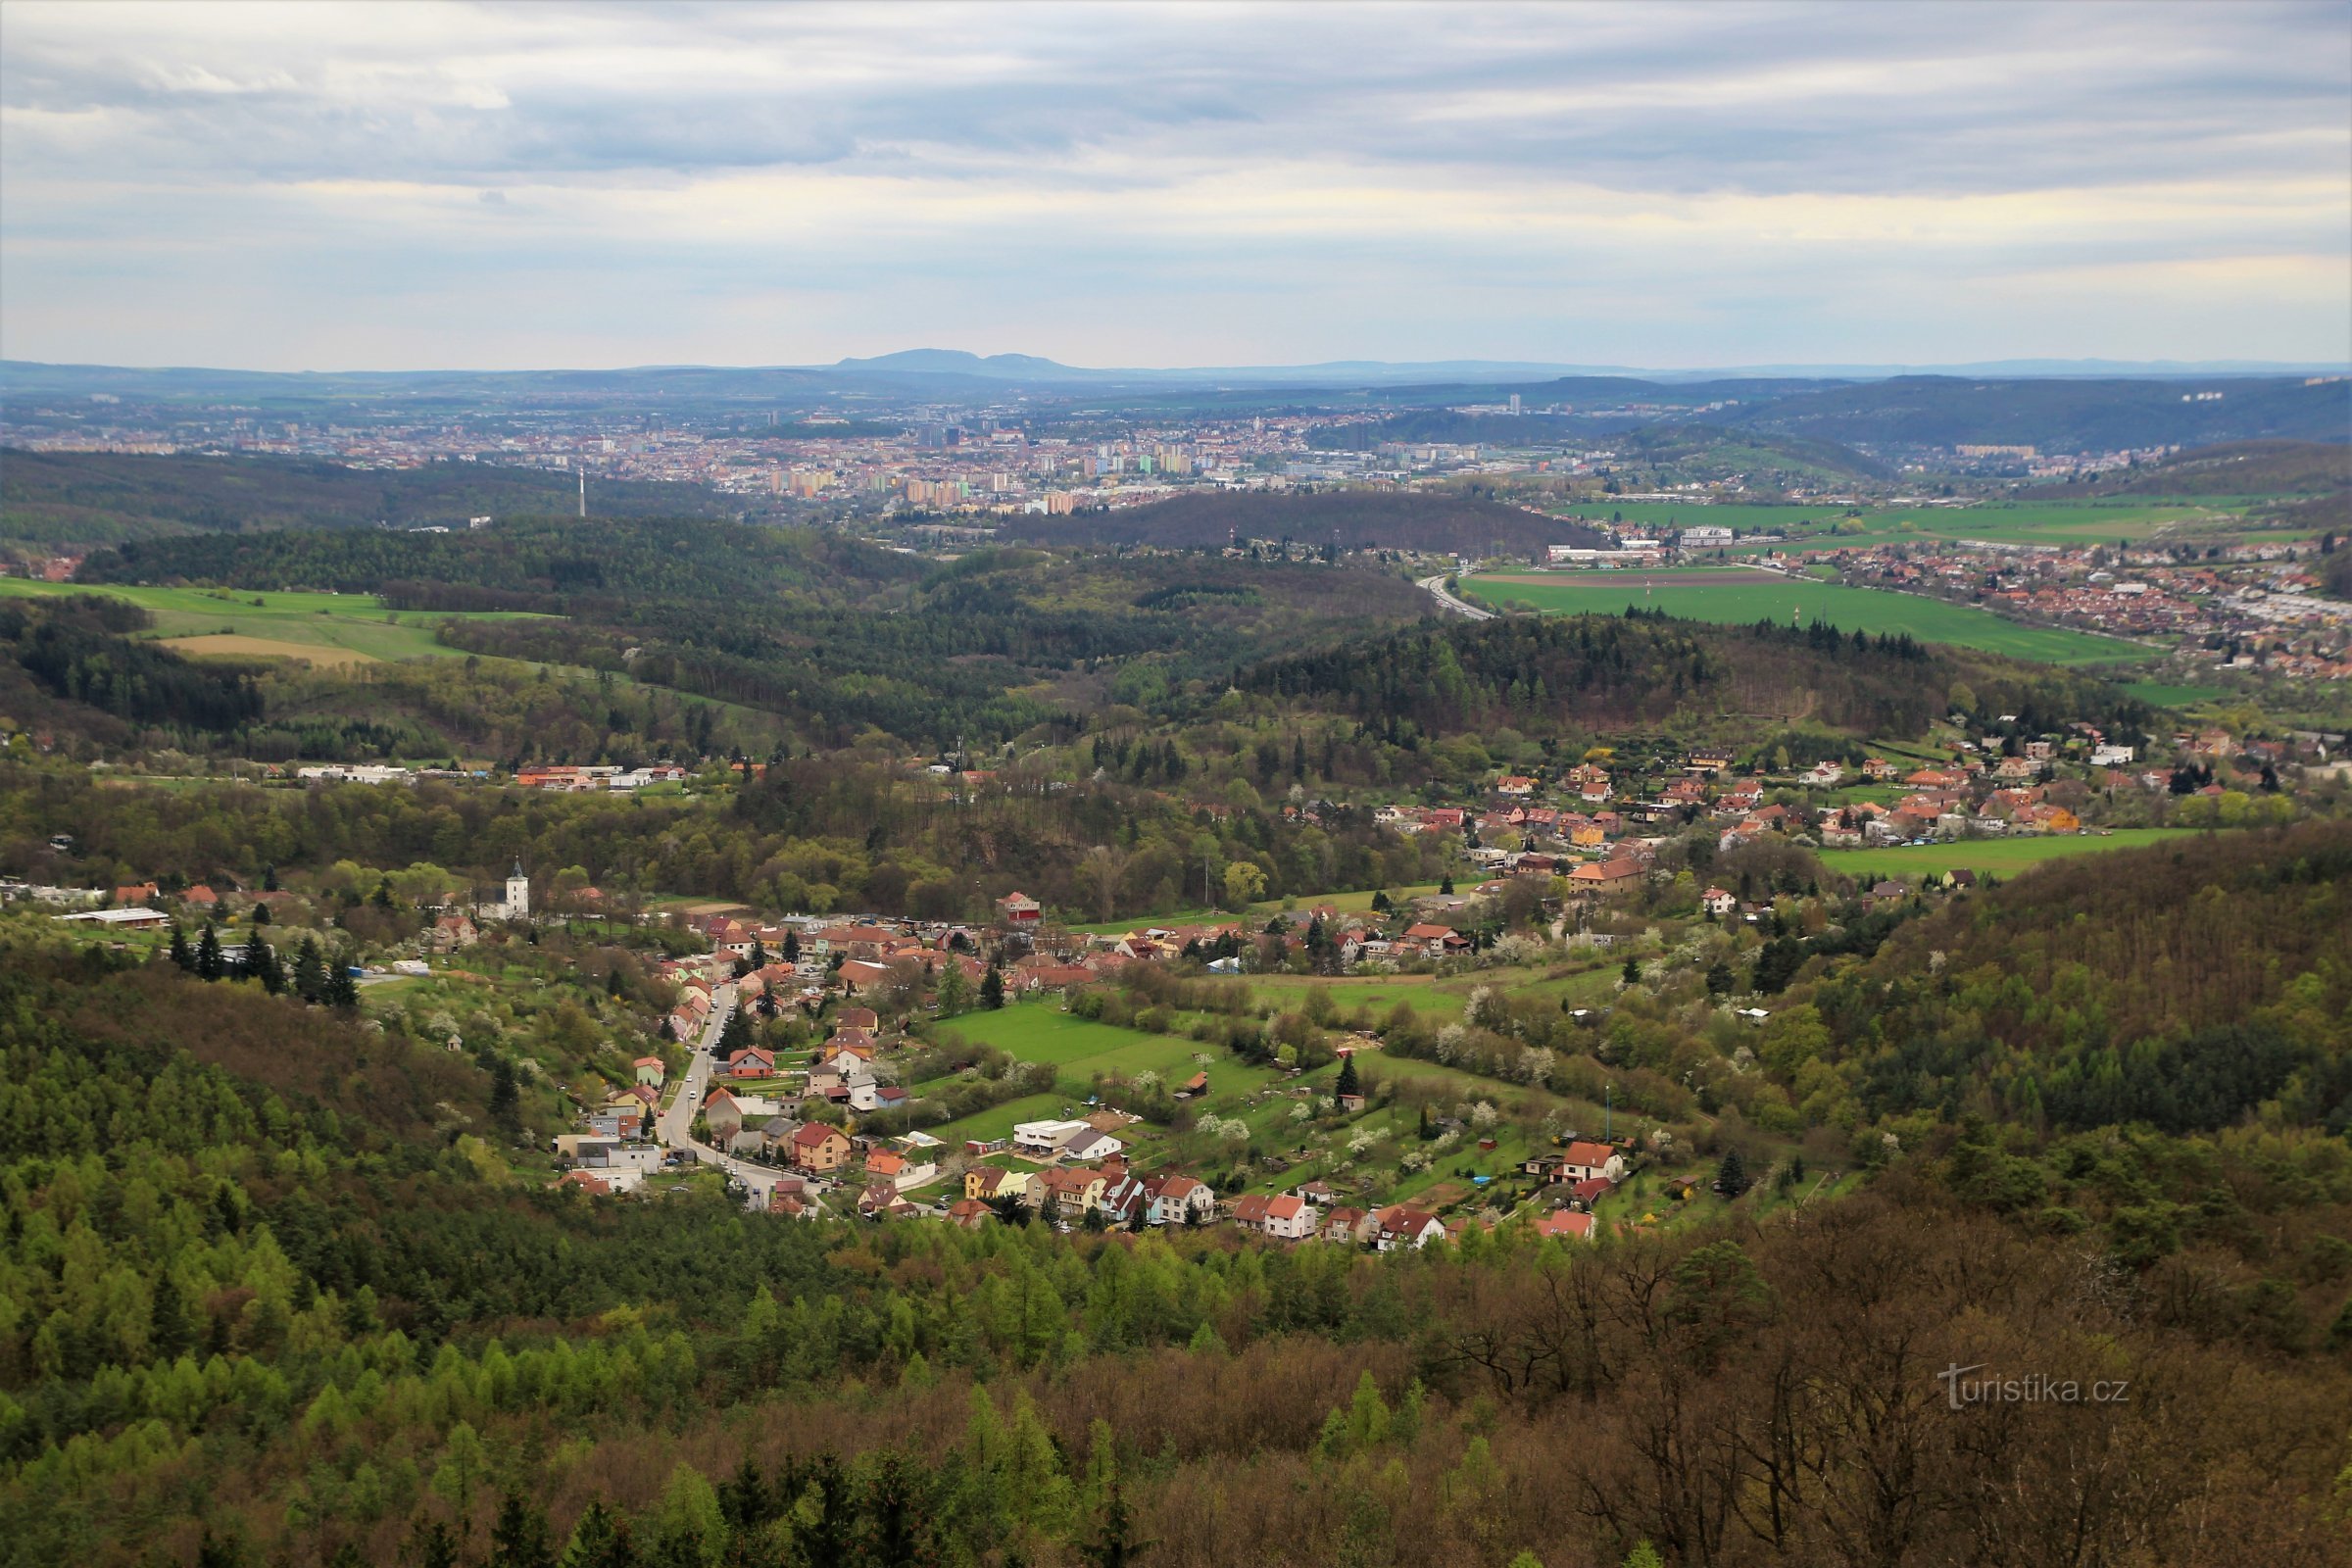 Θέα προς το Μπρνο, στο πρώτο πλάνο βρίσκεται το Lelekovice, στο βάθος η κορυφογραμμή της Pálava στον ορίζοντα